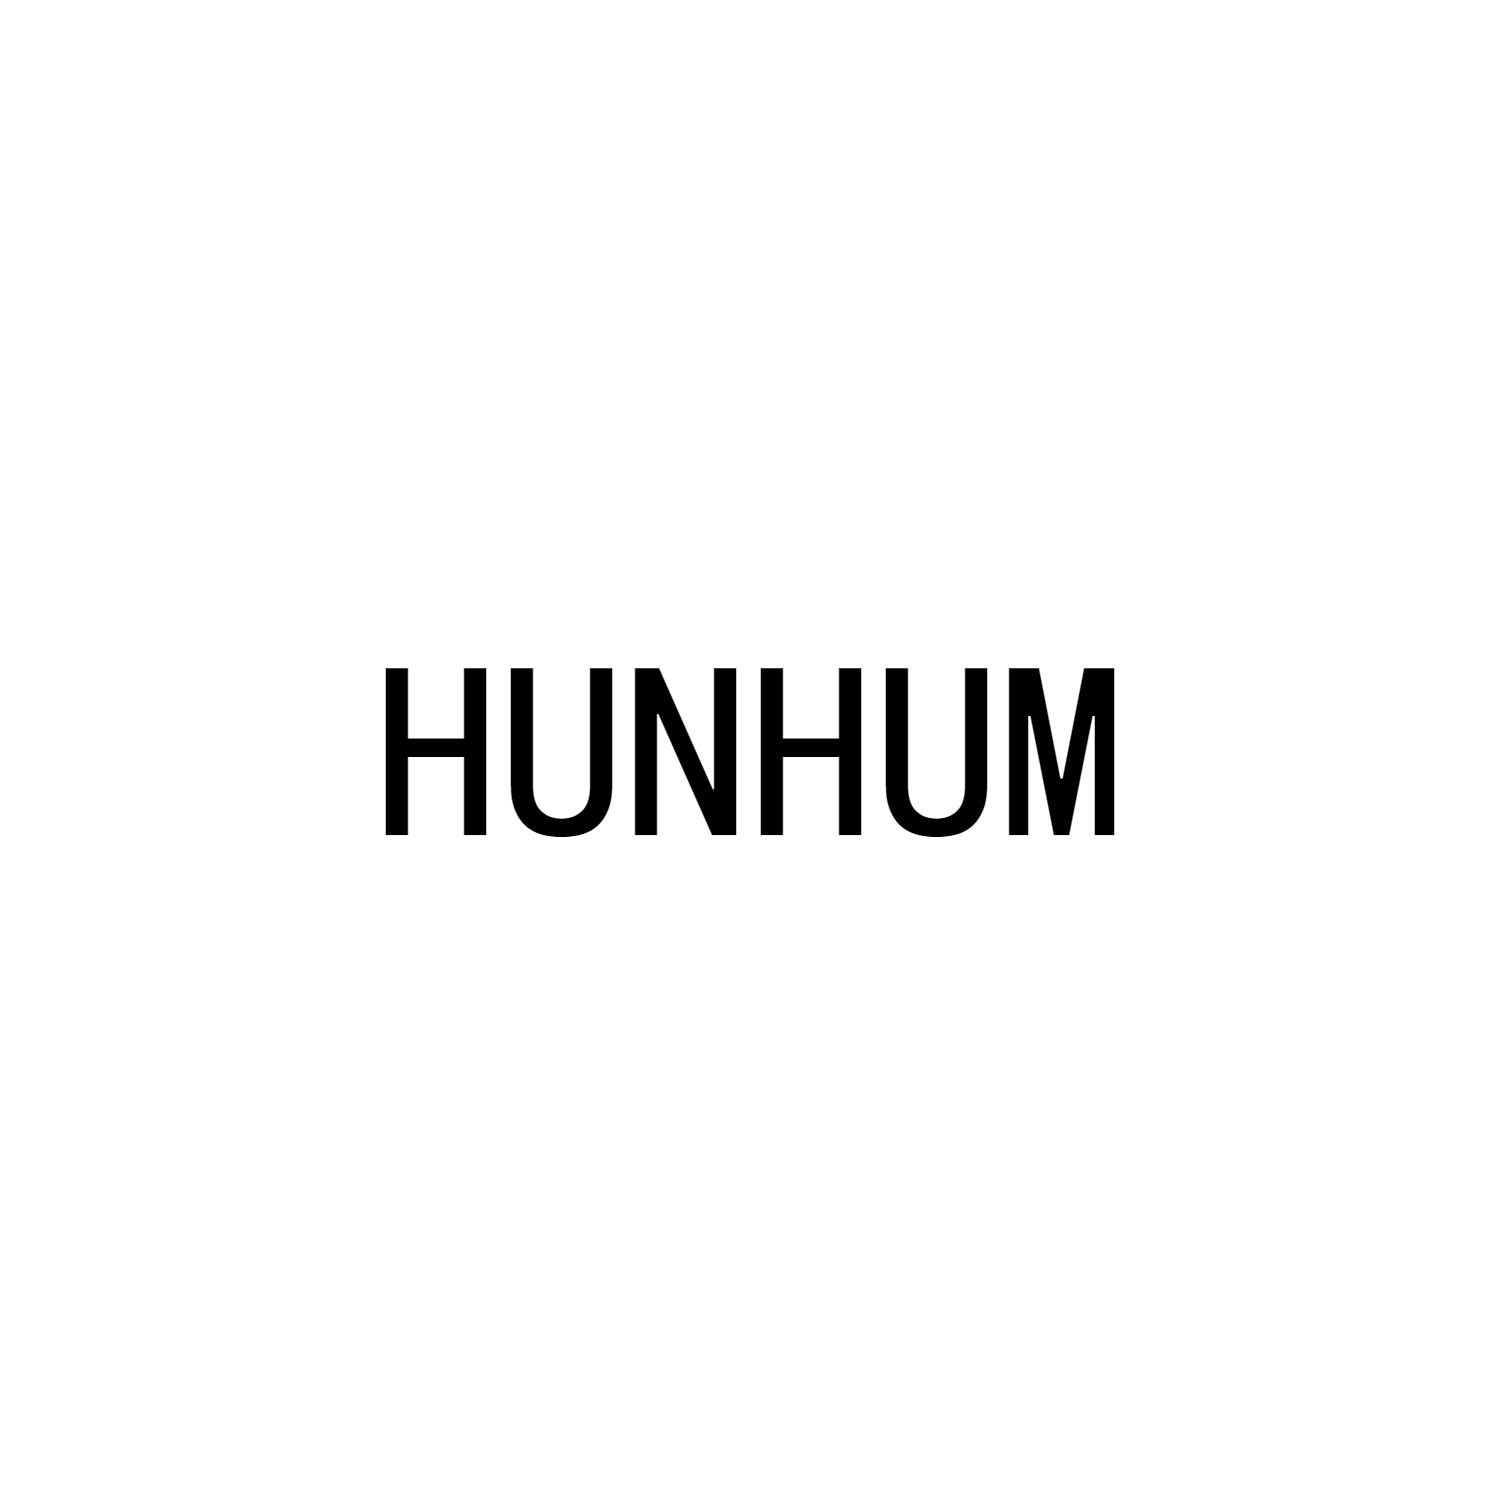 HUNHUM